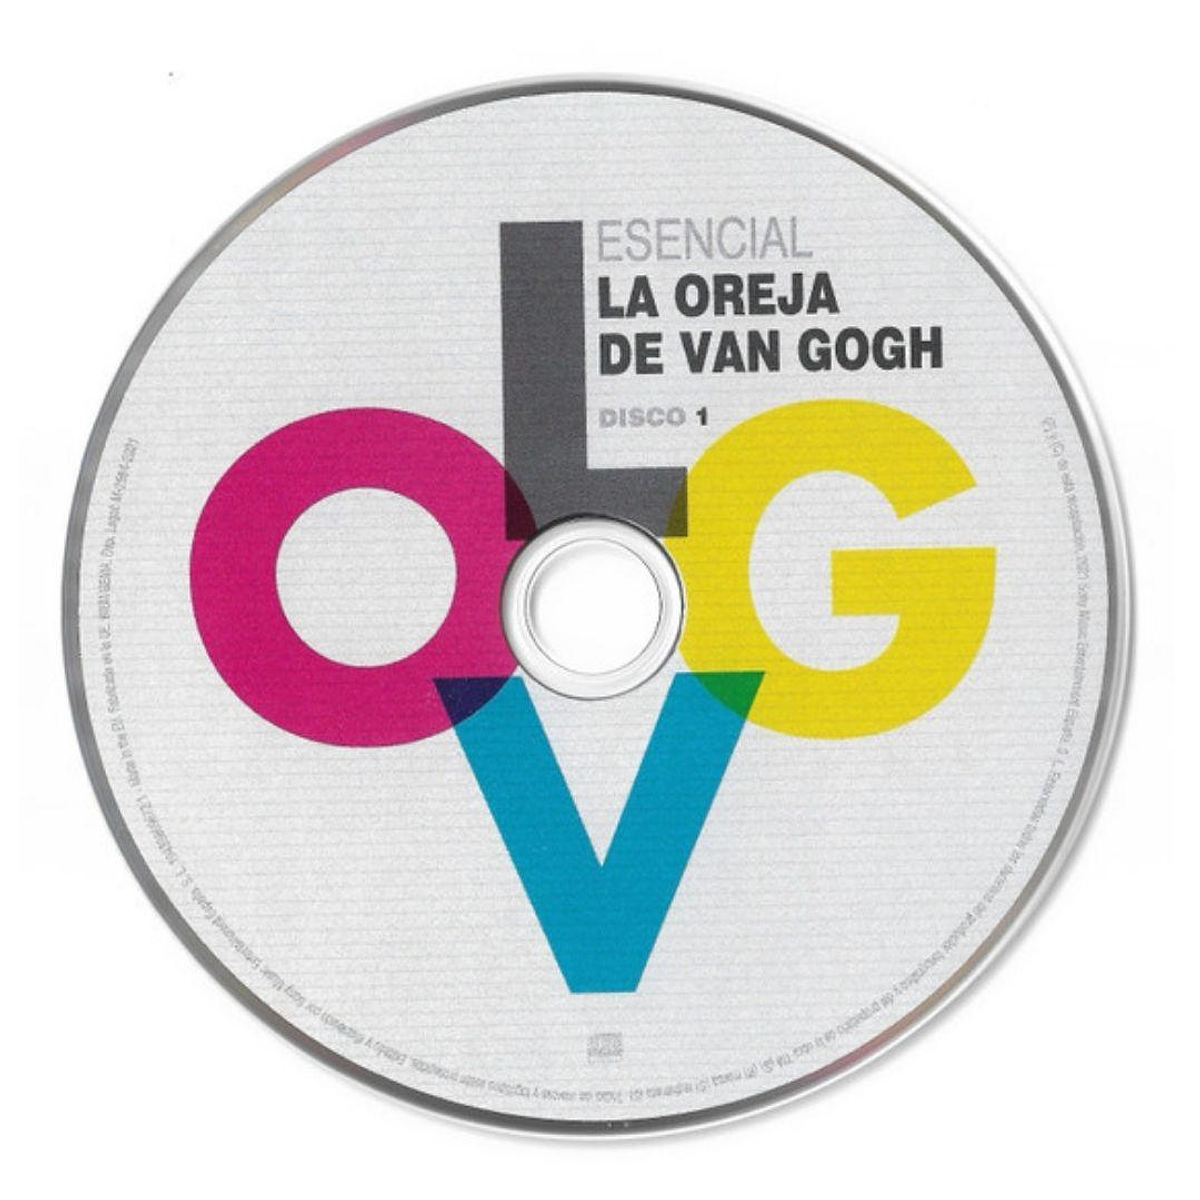  LOVG - Grandes Exitos: CDs y Vinilo